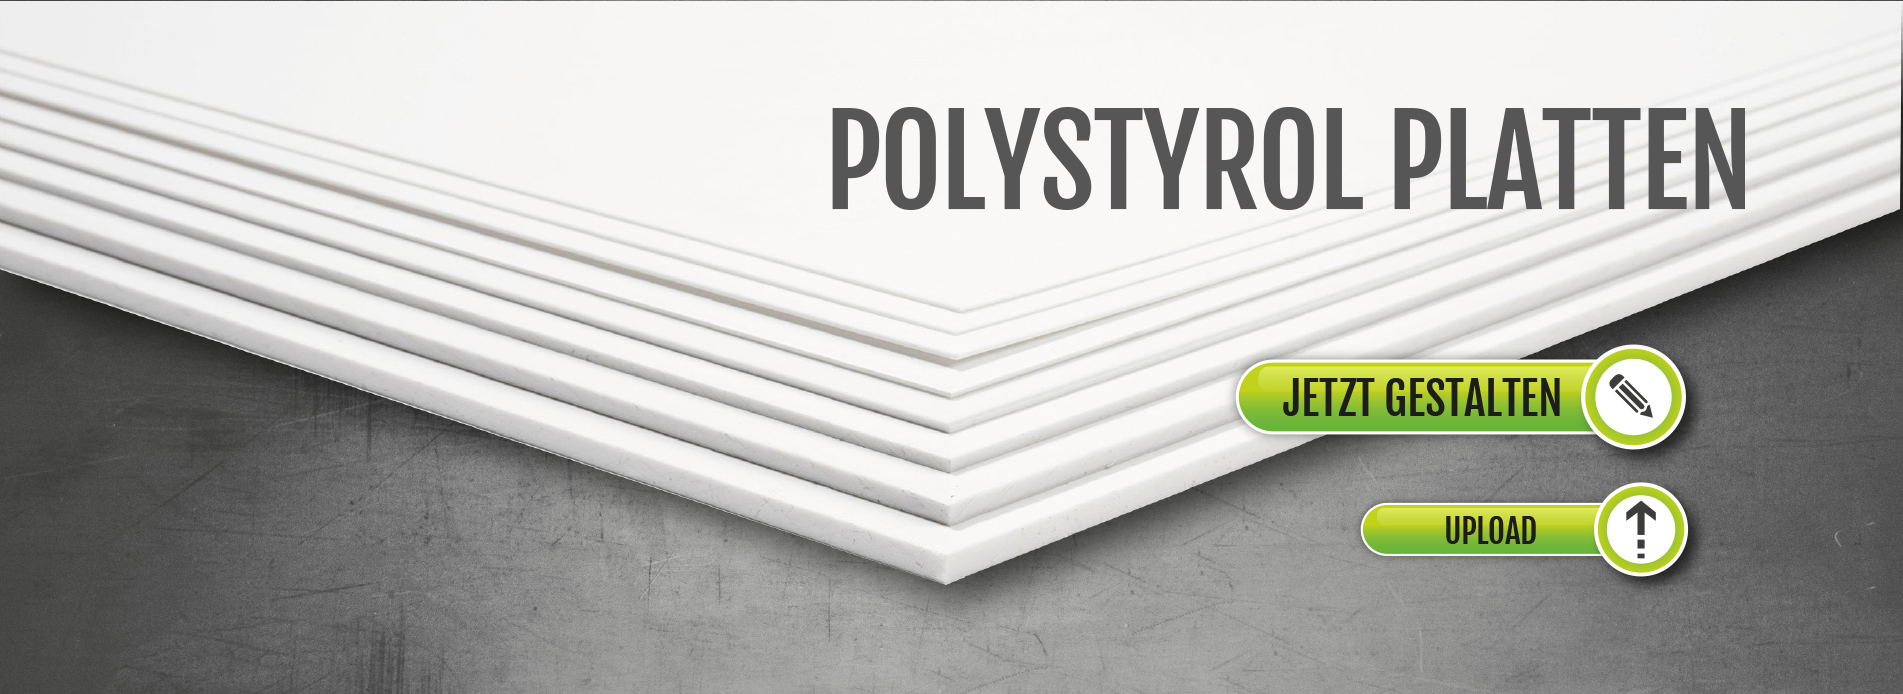 Poystyrolplatten bedrucken | Polystyrol Schilder | günstig drucken